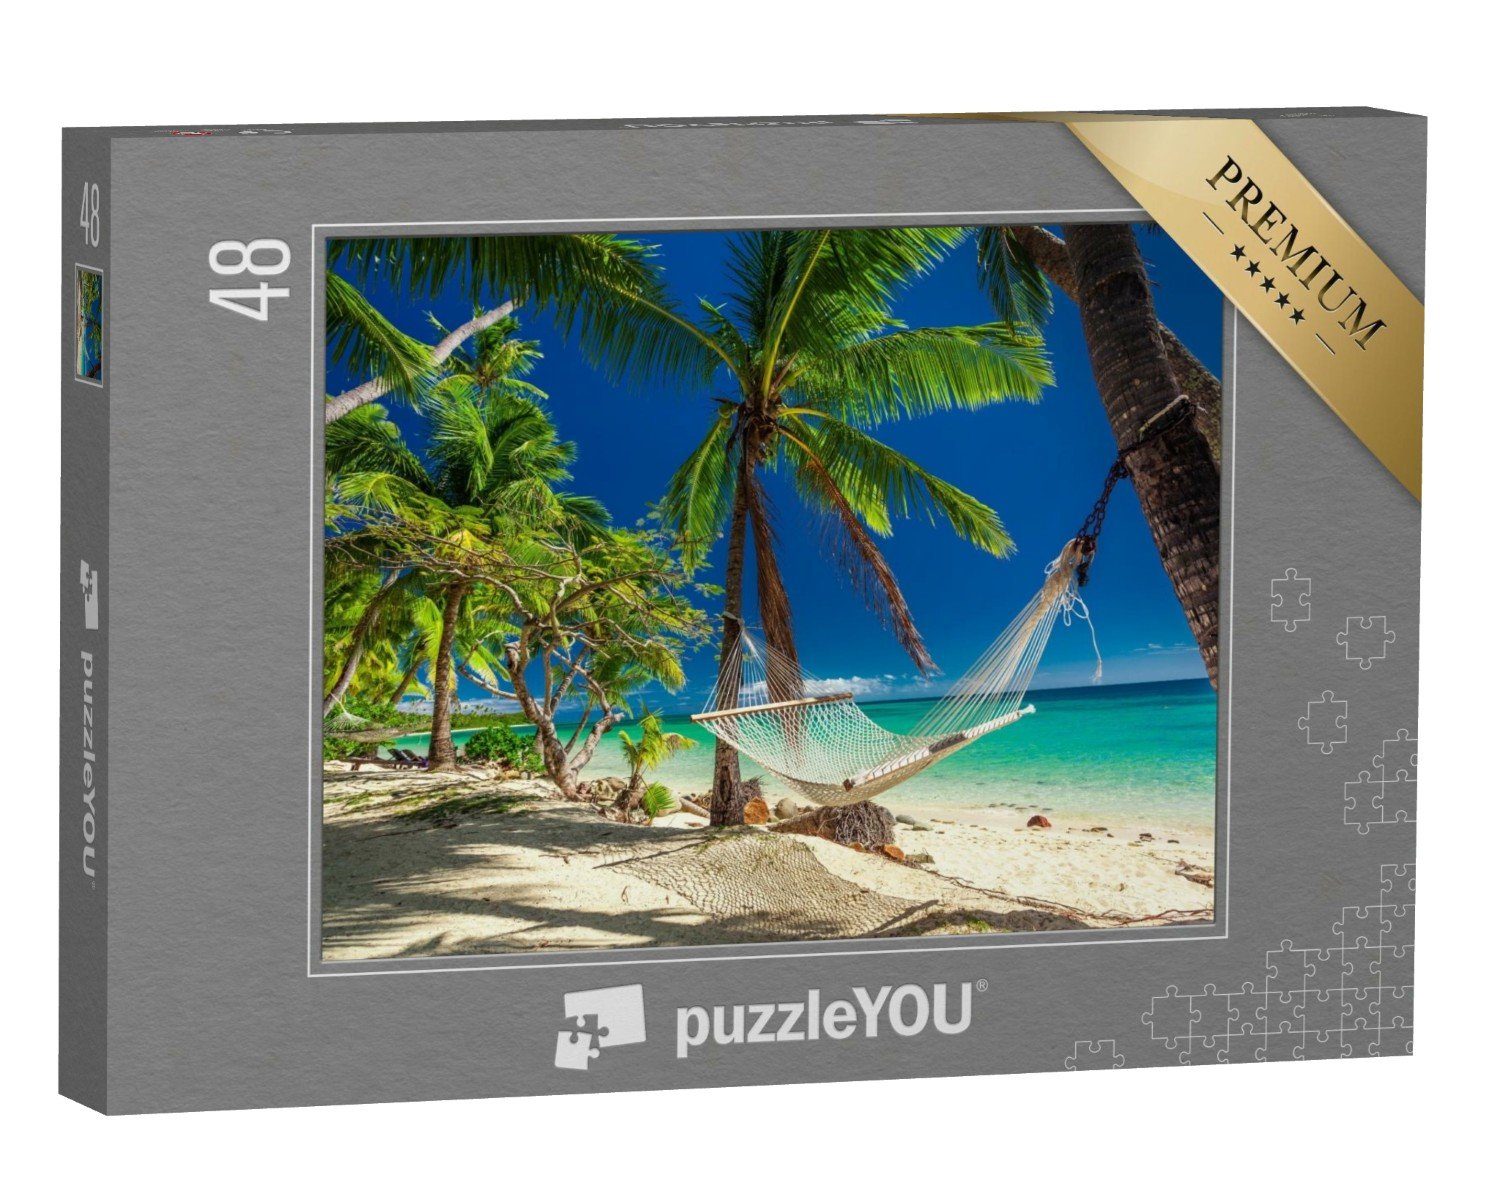 puzzleYOU Puzzle Hängematte unter tropischen Palmen, Fidschi-Inseln, 48 Puzzleteile, puzzleYOU-Kollektionen 48 Teile, 100 Teile, 500 Teile, 200 Teile